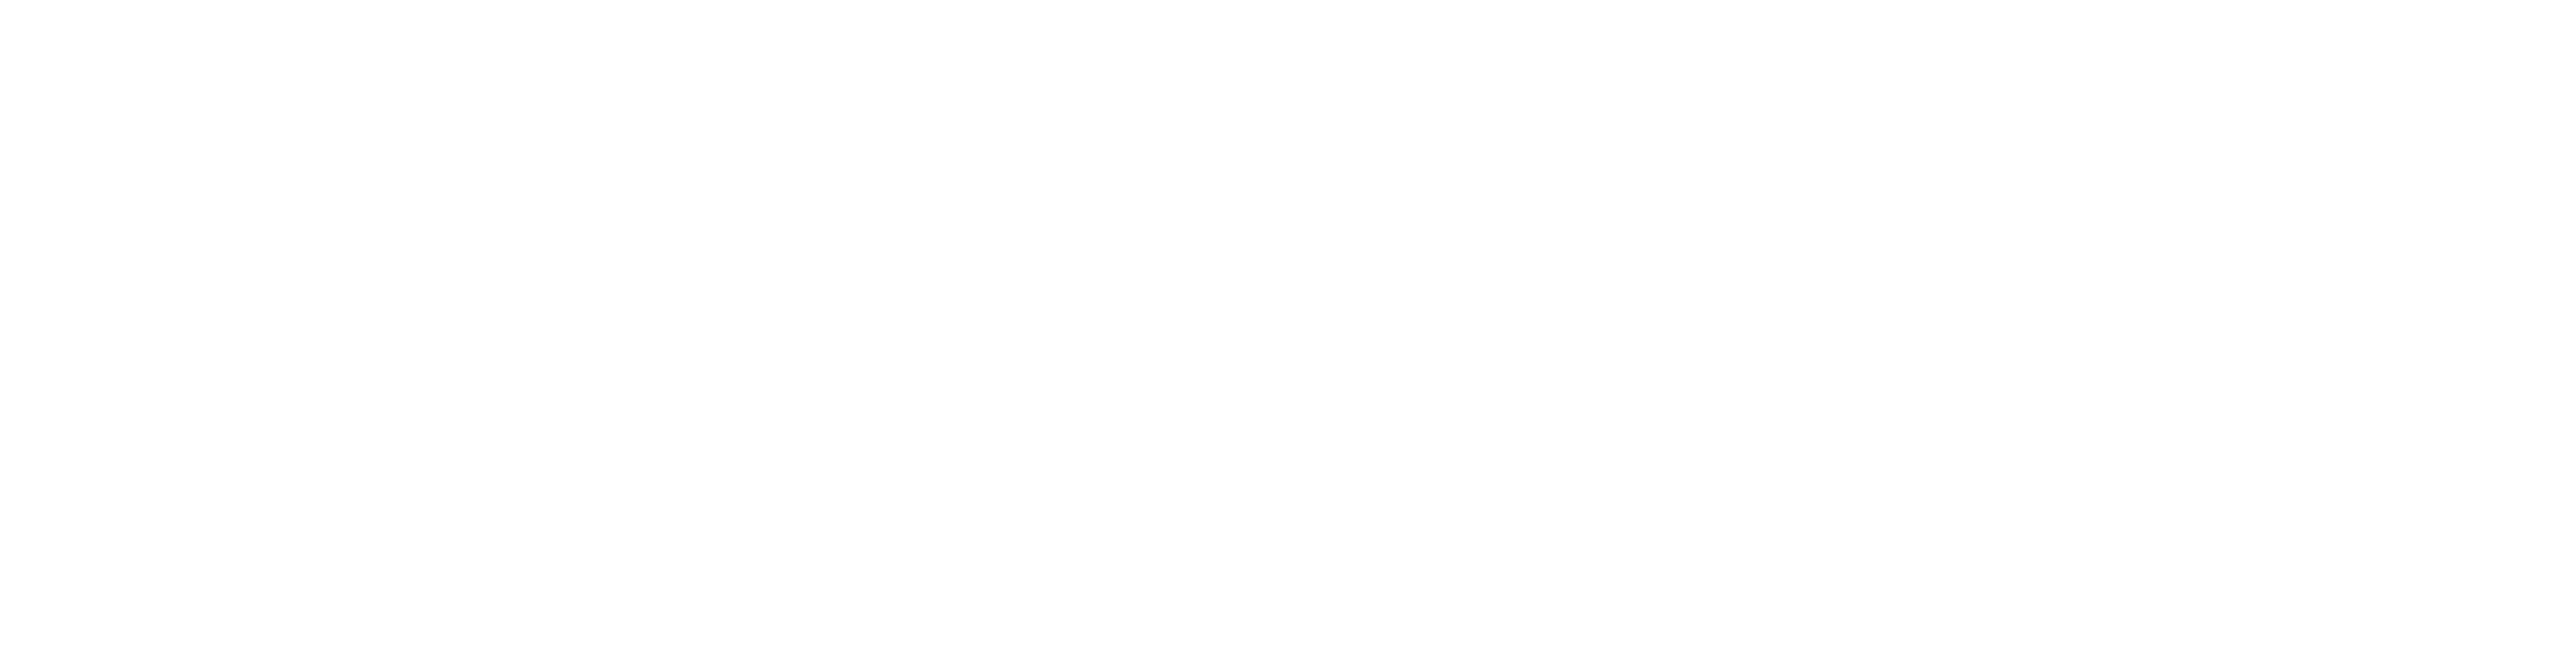 ChalkGear.com